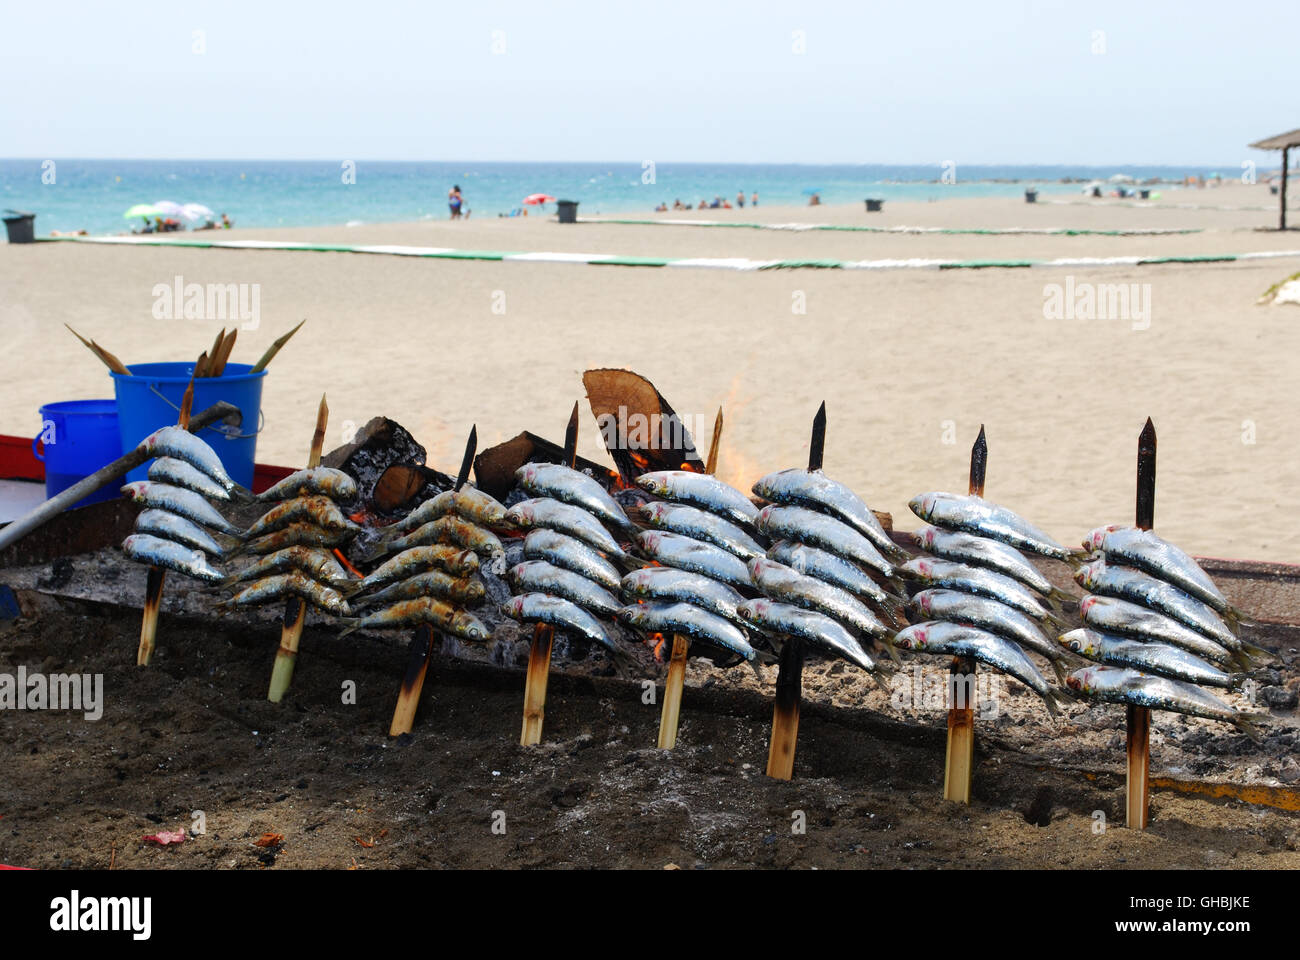 La cuisson des sardines sur un bateau le long de la plage, barbecue, Estepona, Province de Malaga, Andalousie, Espagne, Europe de l'Ouest. Banque D'Images